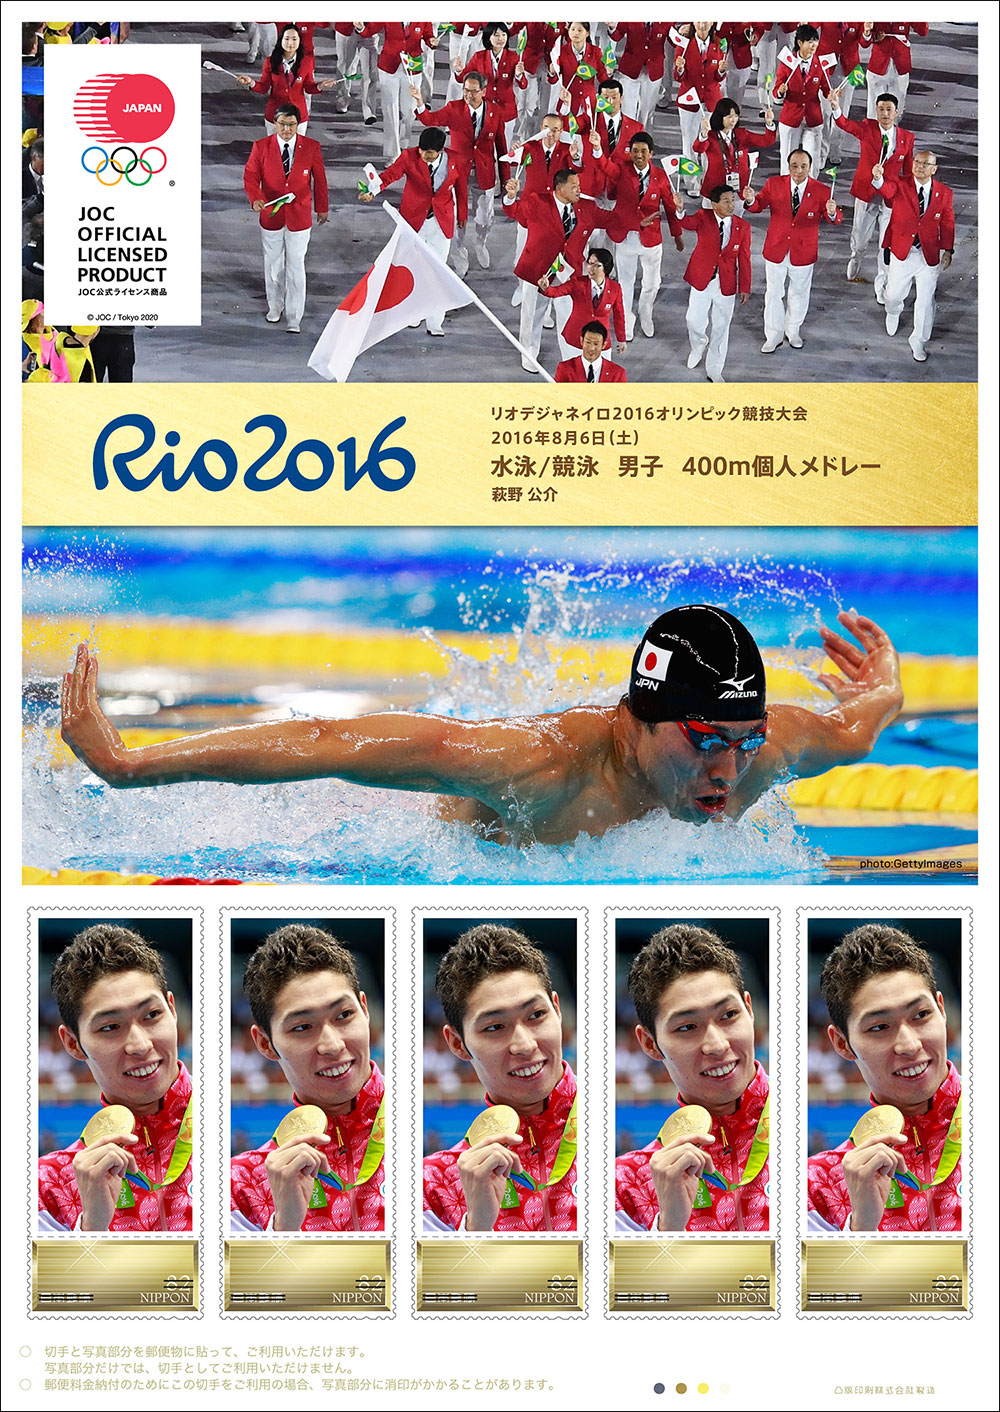 リオデジャネイロ16オリンピック 日本代表選手 金メダリスト公式フレーム切手の販売 日本郵便